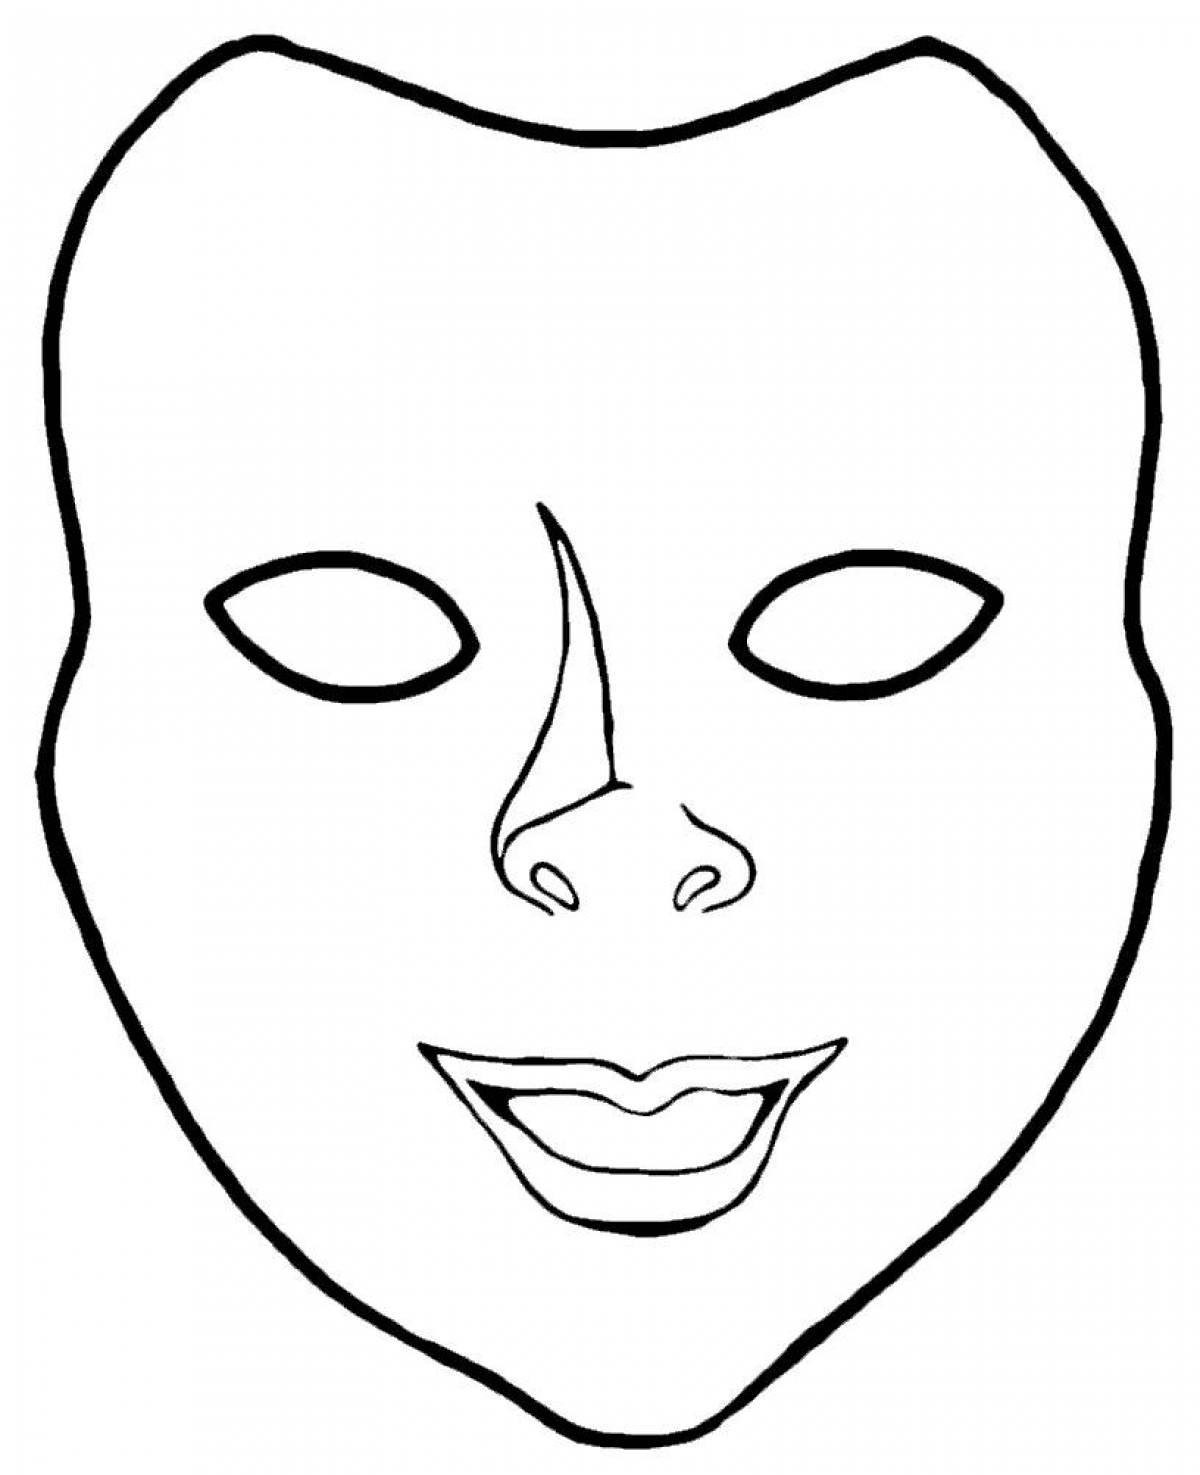 Страница раскраски с веселой маской для лица